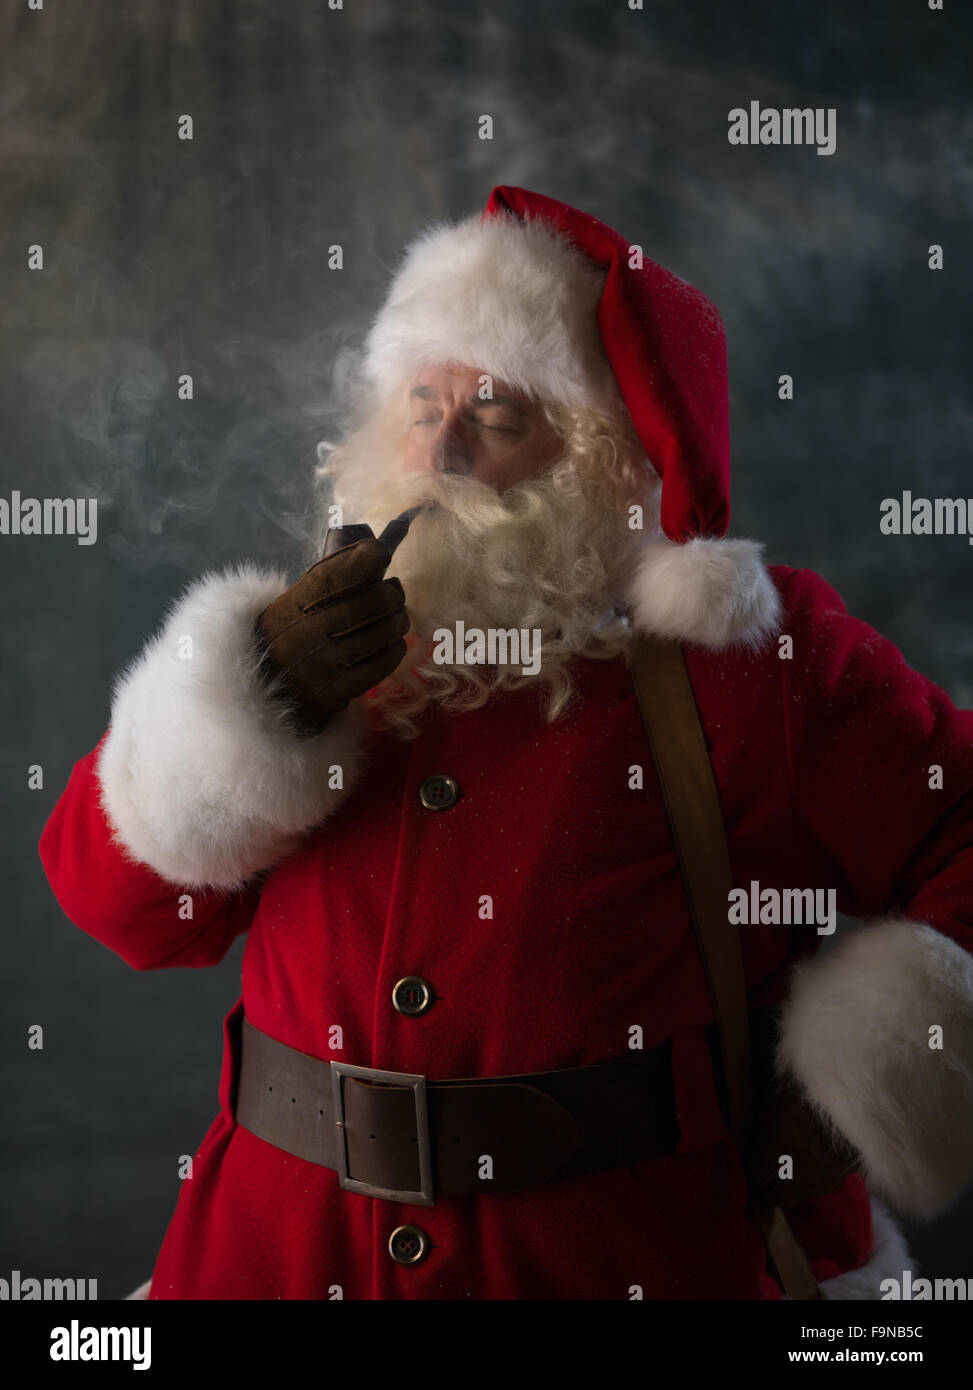 Santa Claus Smoking Pipe Closeup Portrait Stock Photo